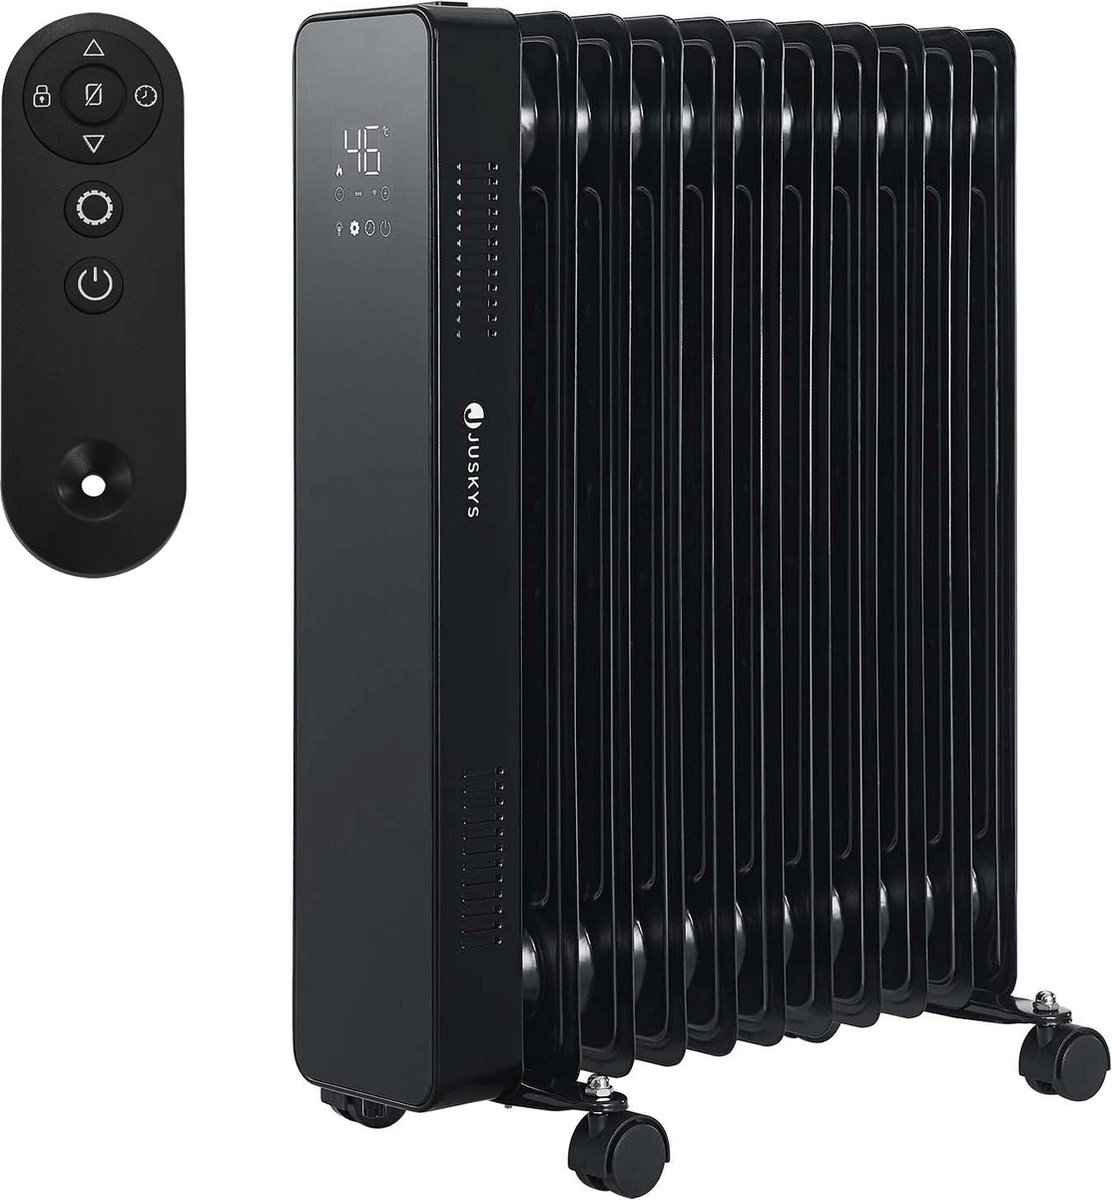 Elektrische verwarming / radiator - 2500 Watt - Zwart - Incl. Wifi, App-bediening & Afstandsbediening, olieradiator